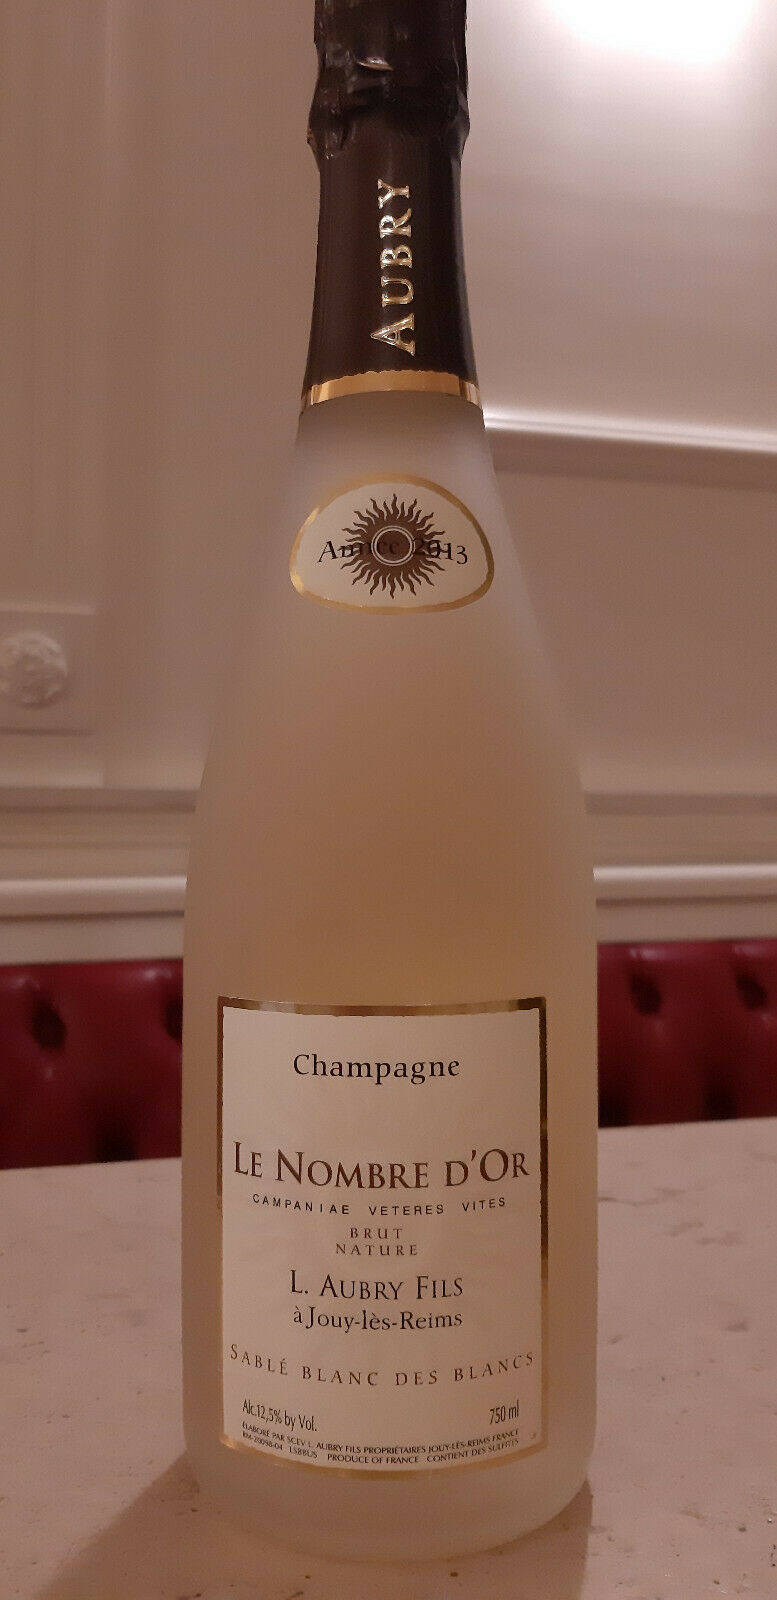 Champagne Brut Blanc des Blancs 'Le Nombre d'Or Sablé' 2013 | Aubry